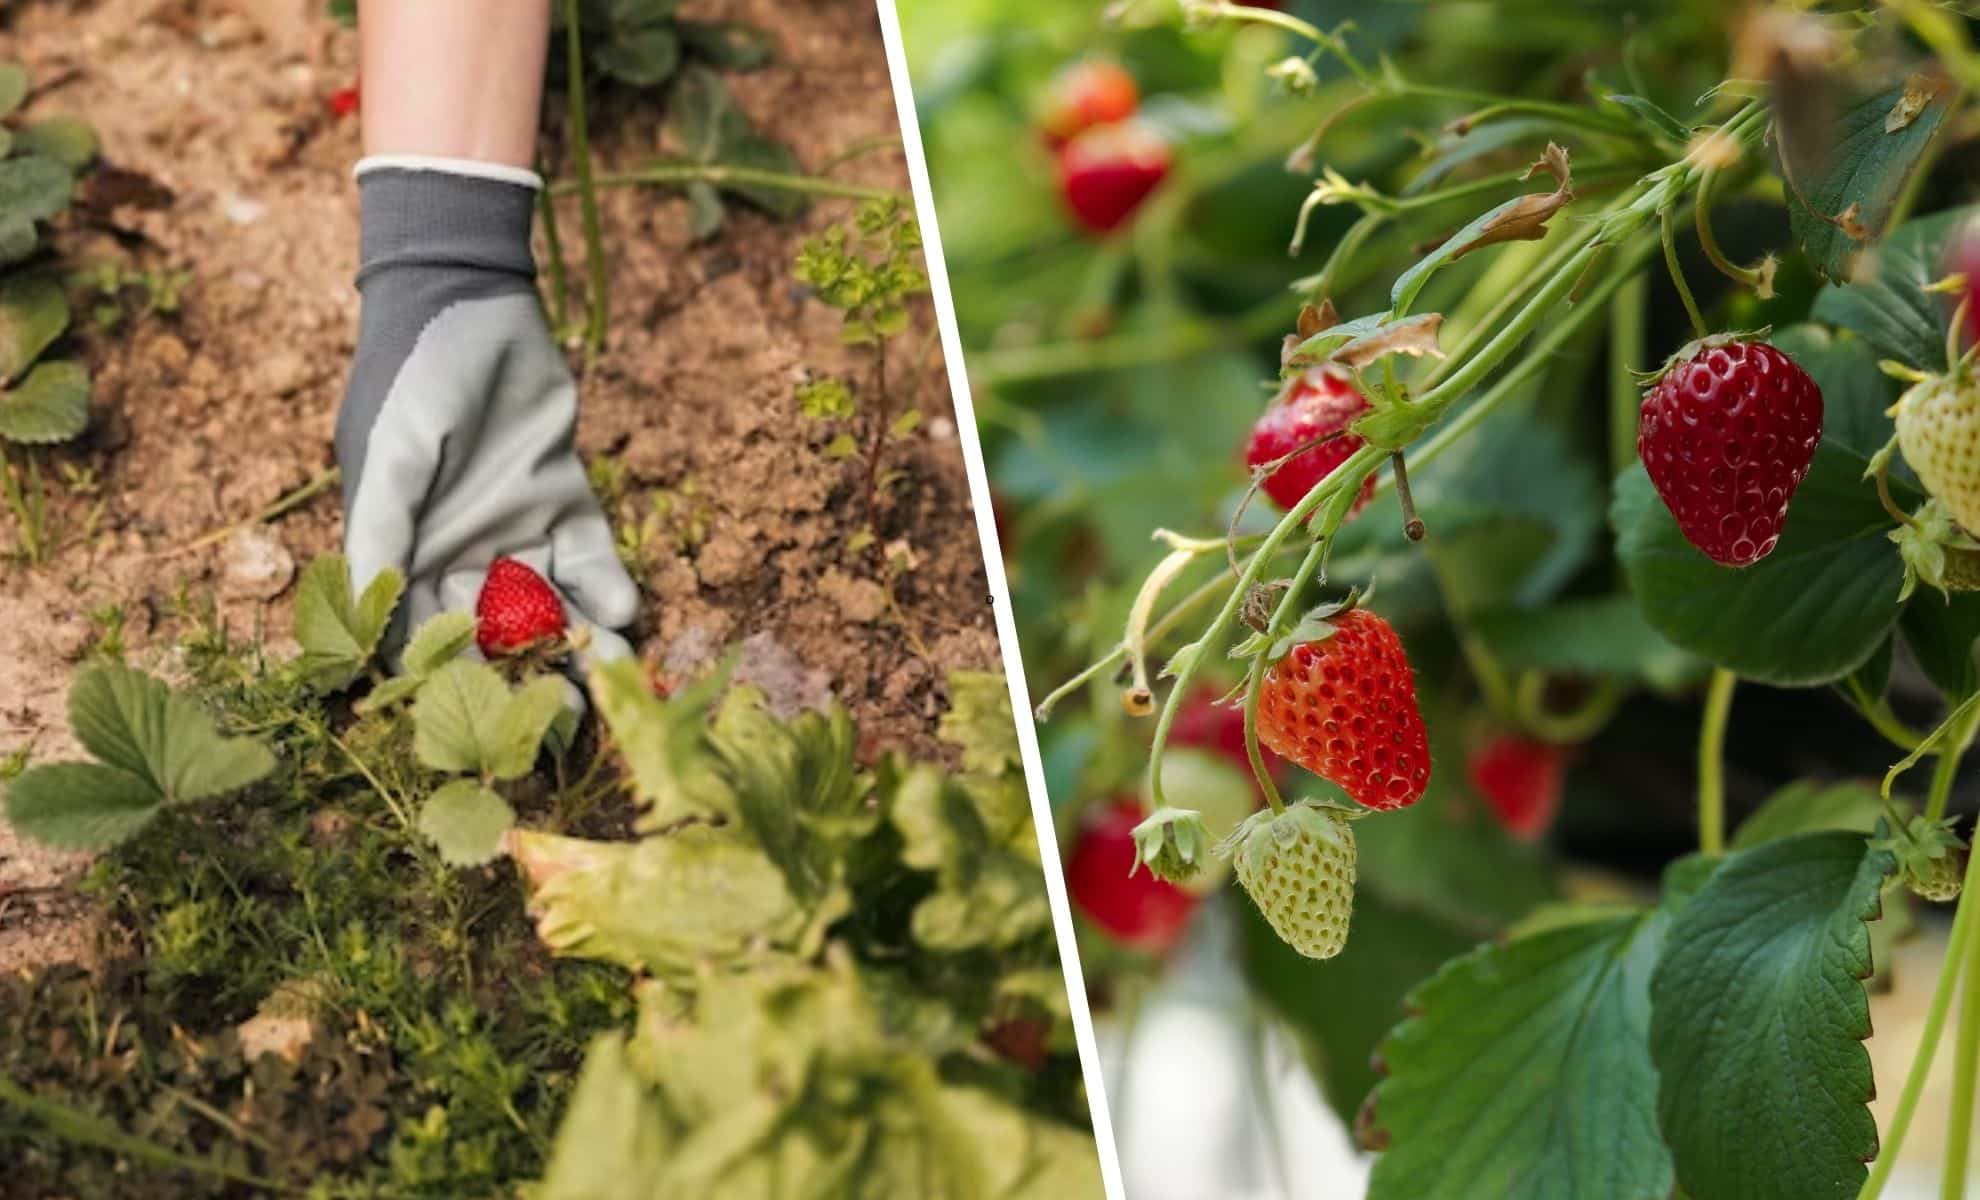 Jardinage : comment booster votre culture de fraises à moindre coût cet été ?